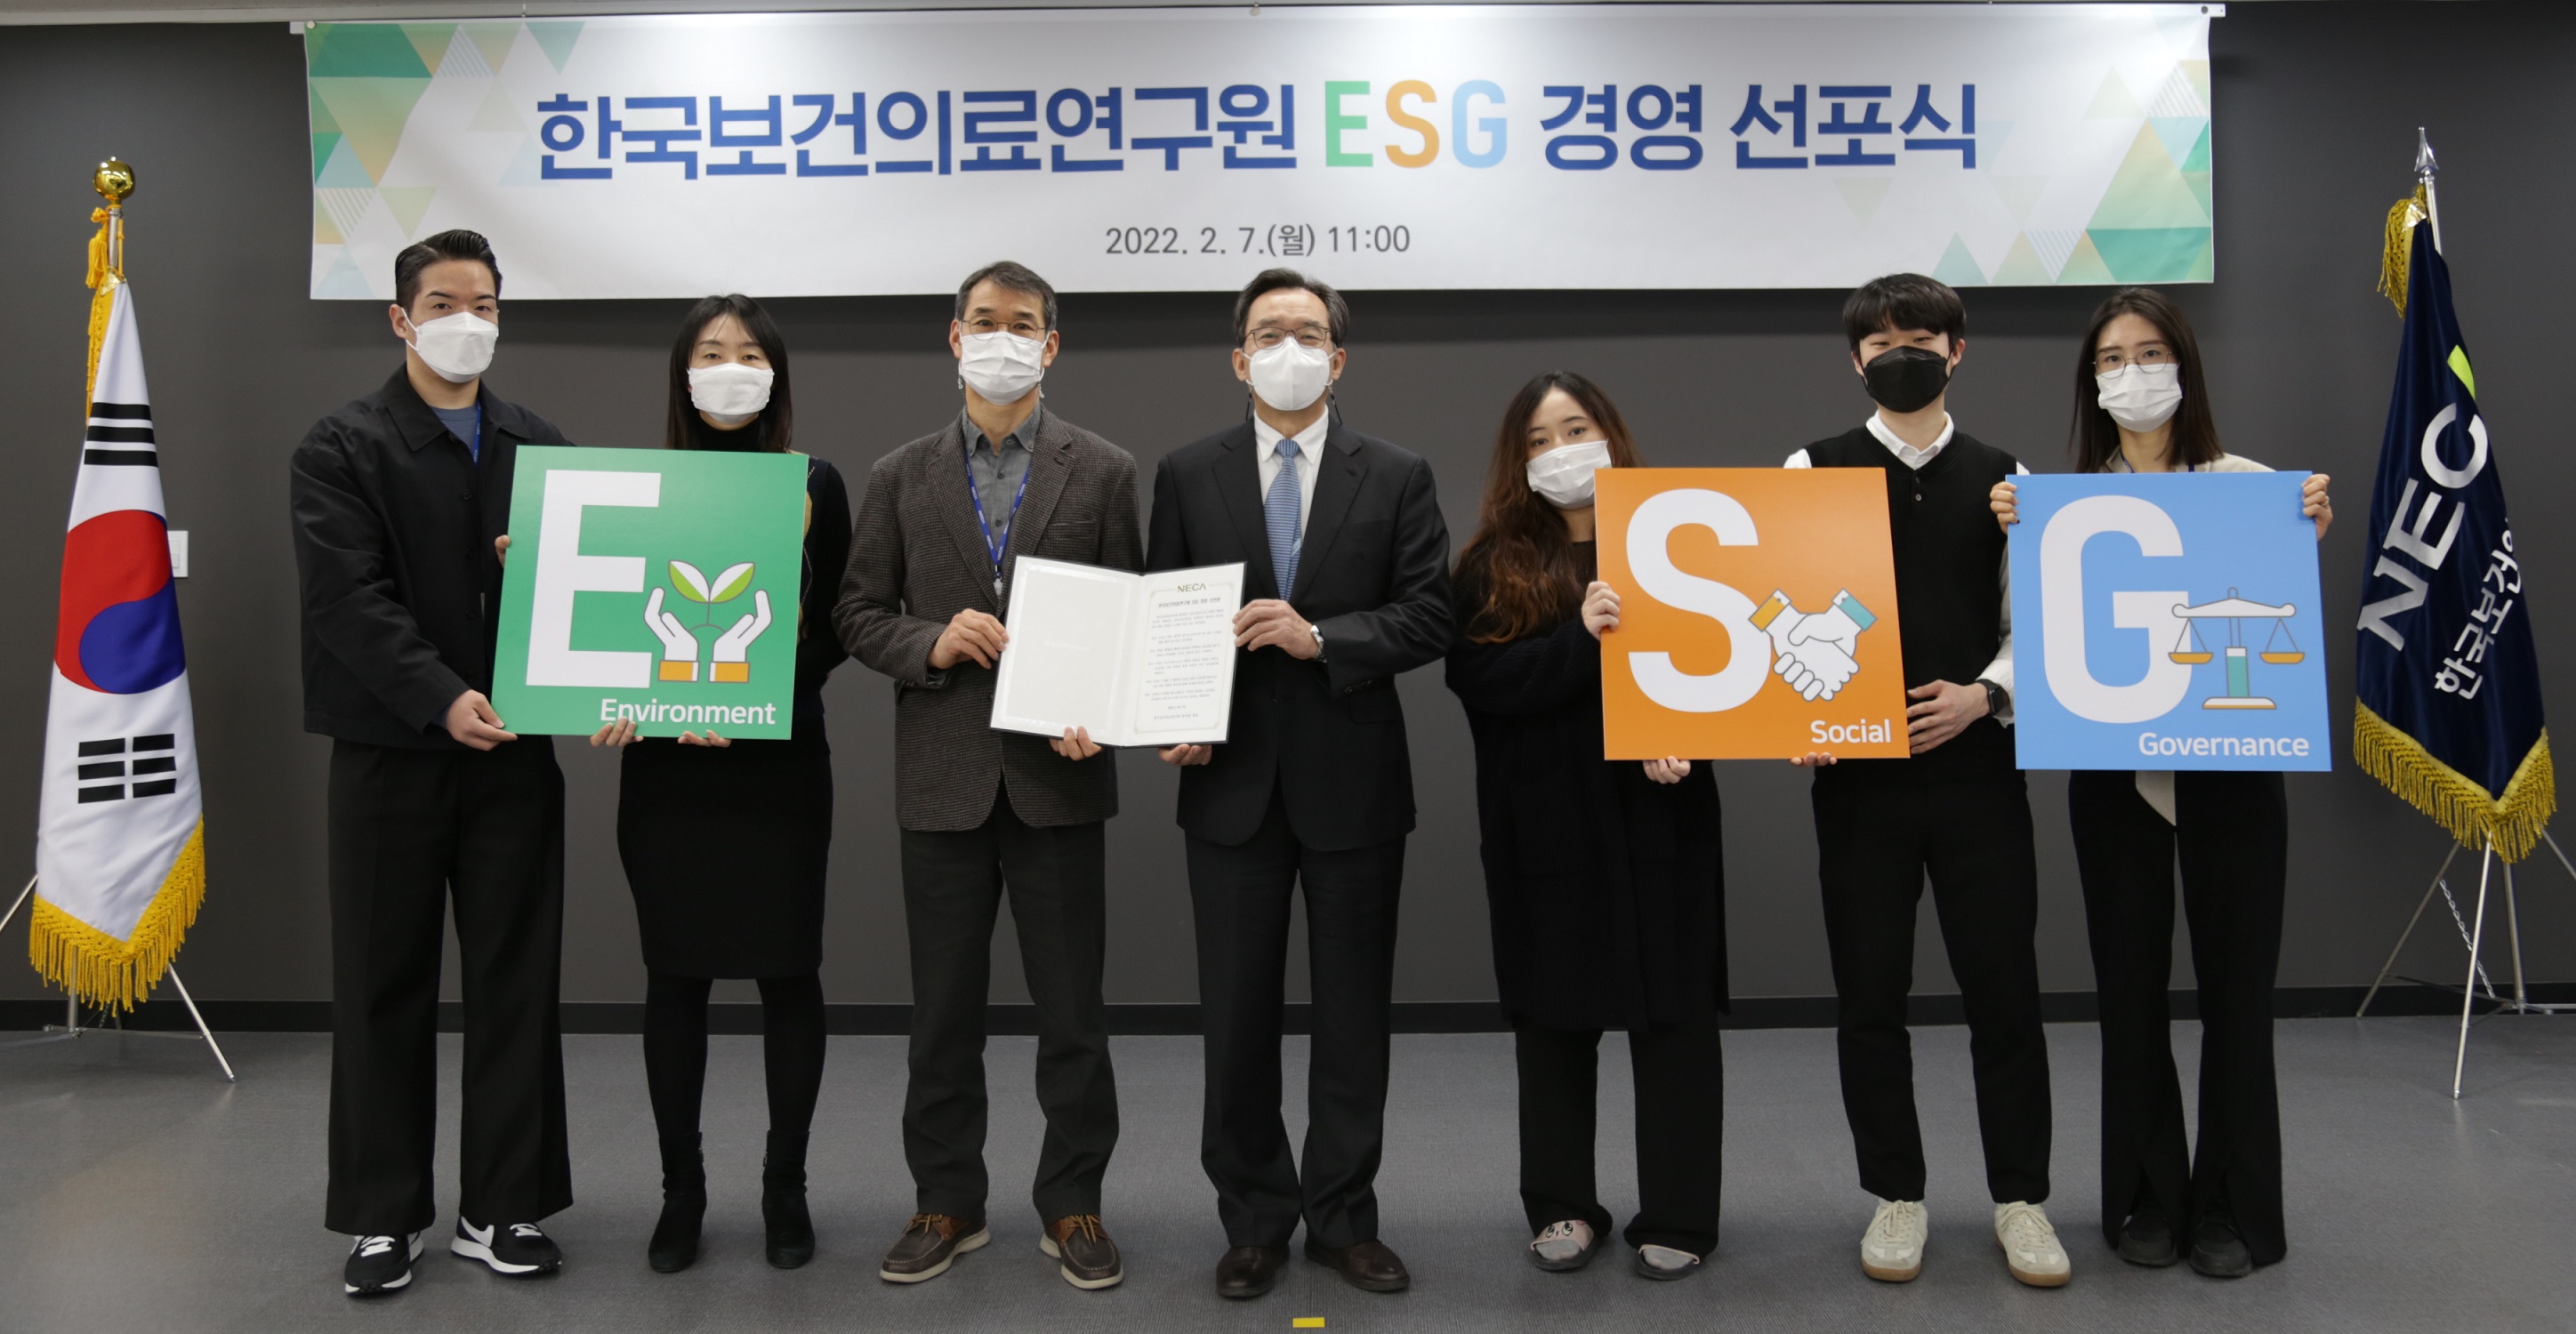 한국보건의료연구원, 지속가능경영을 위한 ESG 경영 선포